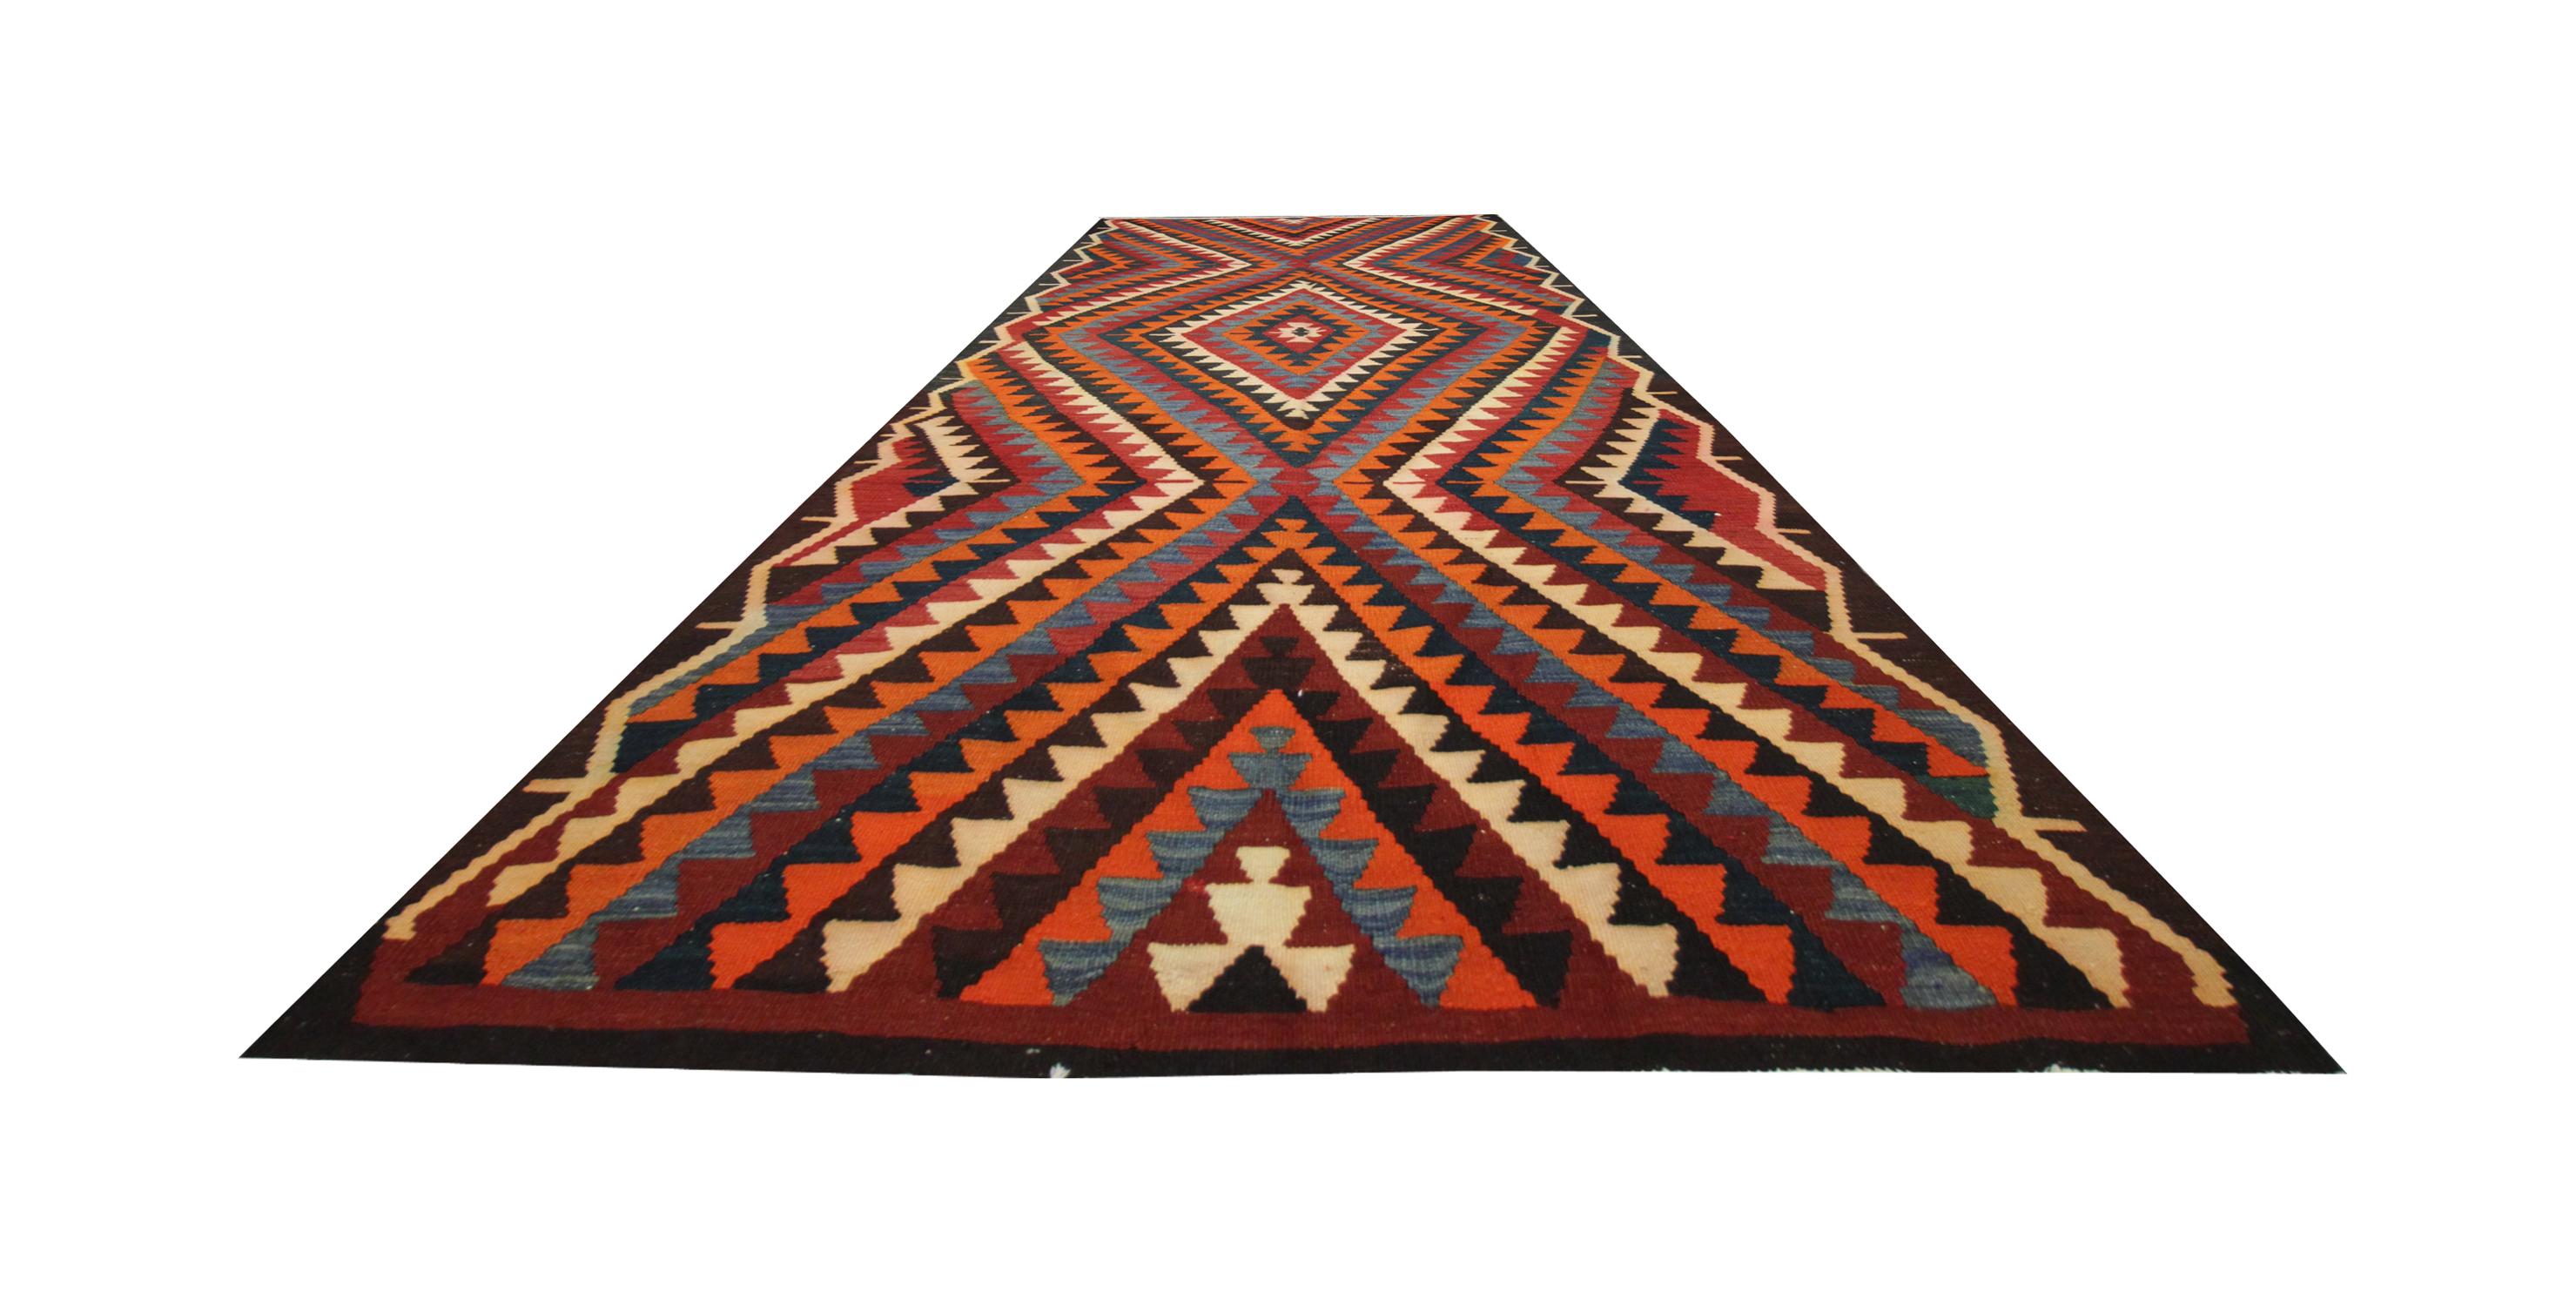 Dieser alte Kilim-Teppich hat einen leuchtend roten Hintergrund mit drei zentralen Medaillons, die mit dekorativen blauen und braunen Akzenten gewebt sind. 
 Diese flachgewebten Teppiche sind aufgrund ihrer atemberaubenden Farb- und